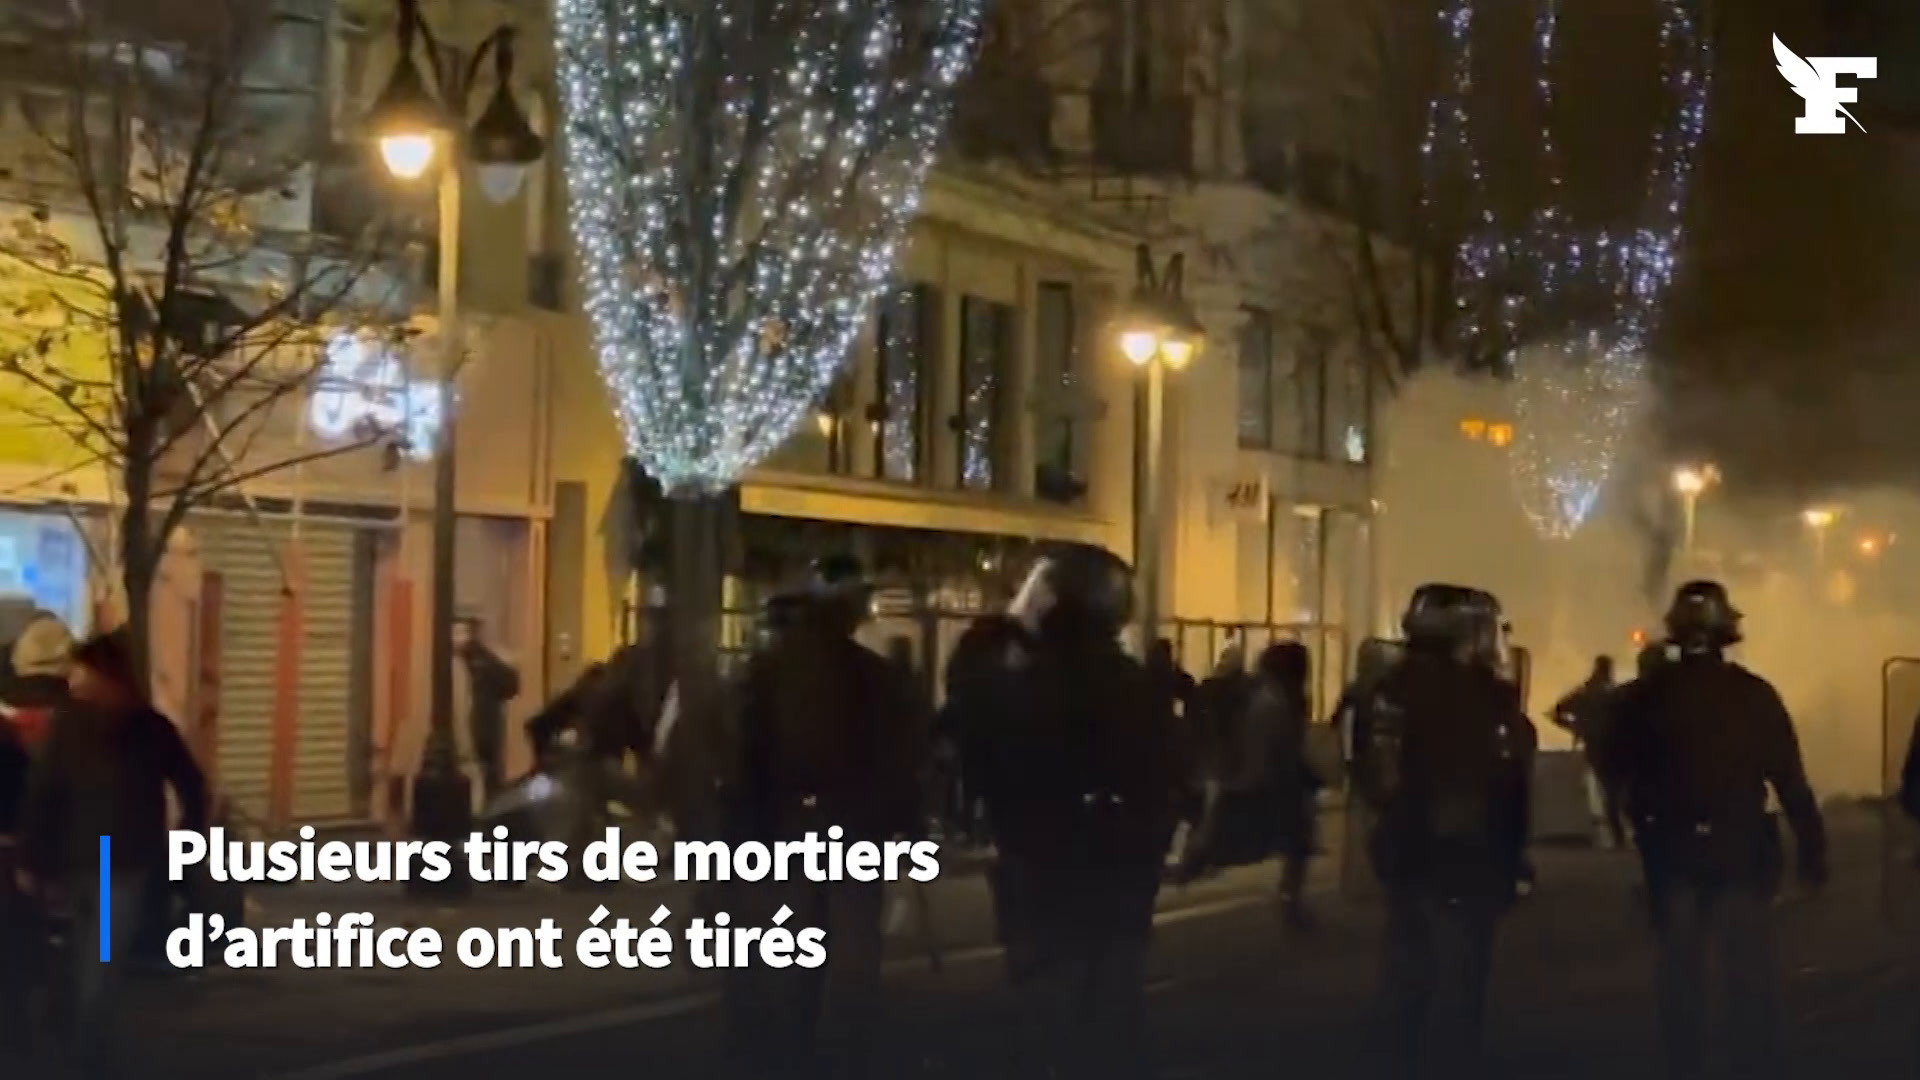 Octogénaire mortellement fauché et délit de fuite à Montpellier